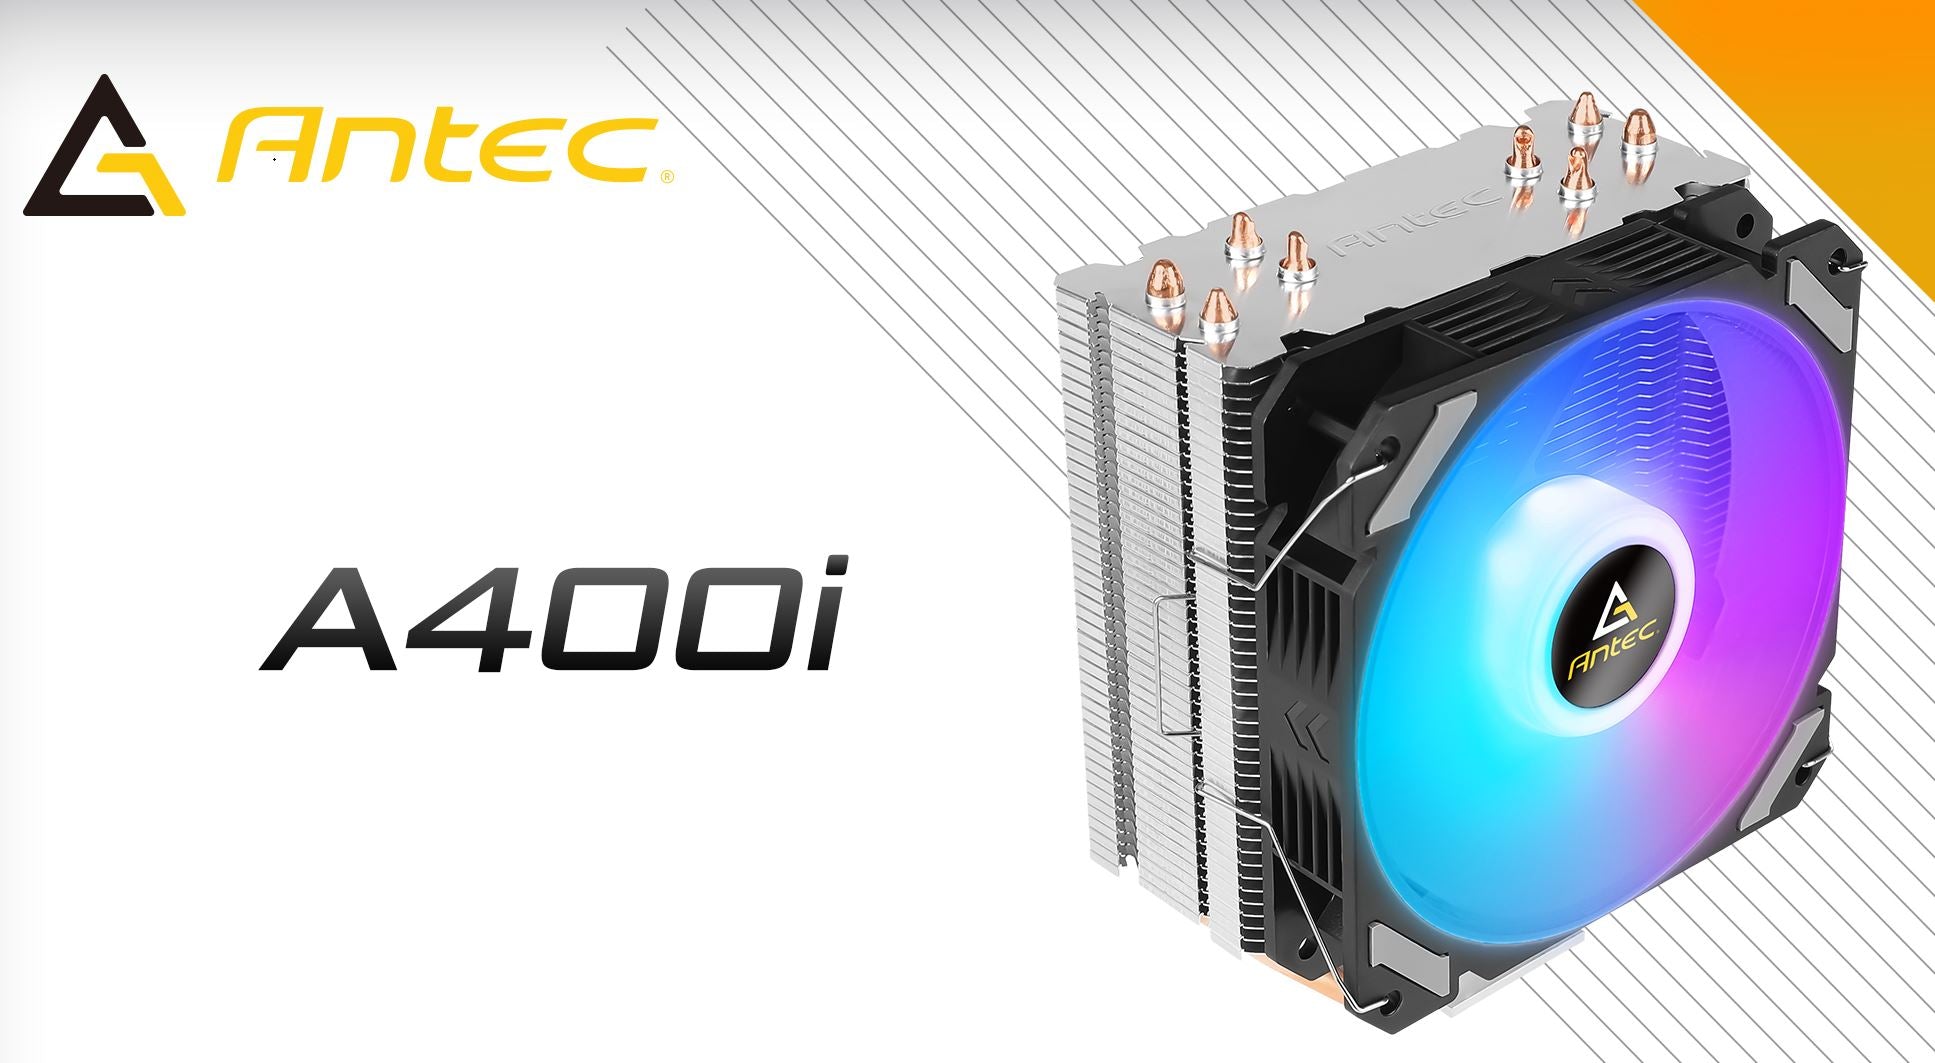 Antec A400i RGB , 72 CFM, 4 Direct Heat-Pipes, 120mm PWM RGB Fan,1700, 115X, 1200, 2011, AM3, AM3+, AM4+, AM5, FM1, FM2, FM2+ CPU Cooler 1yr wty